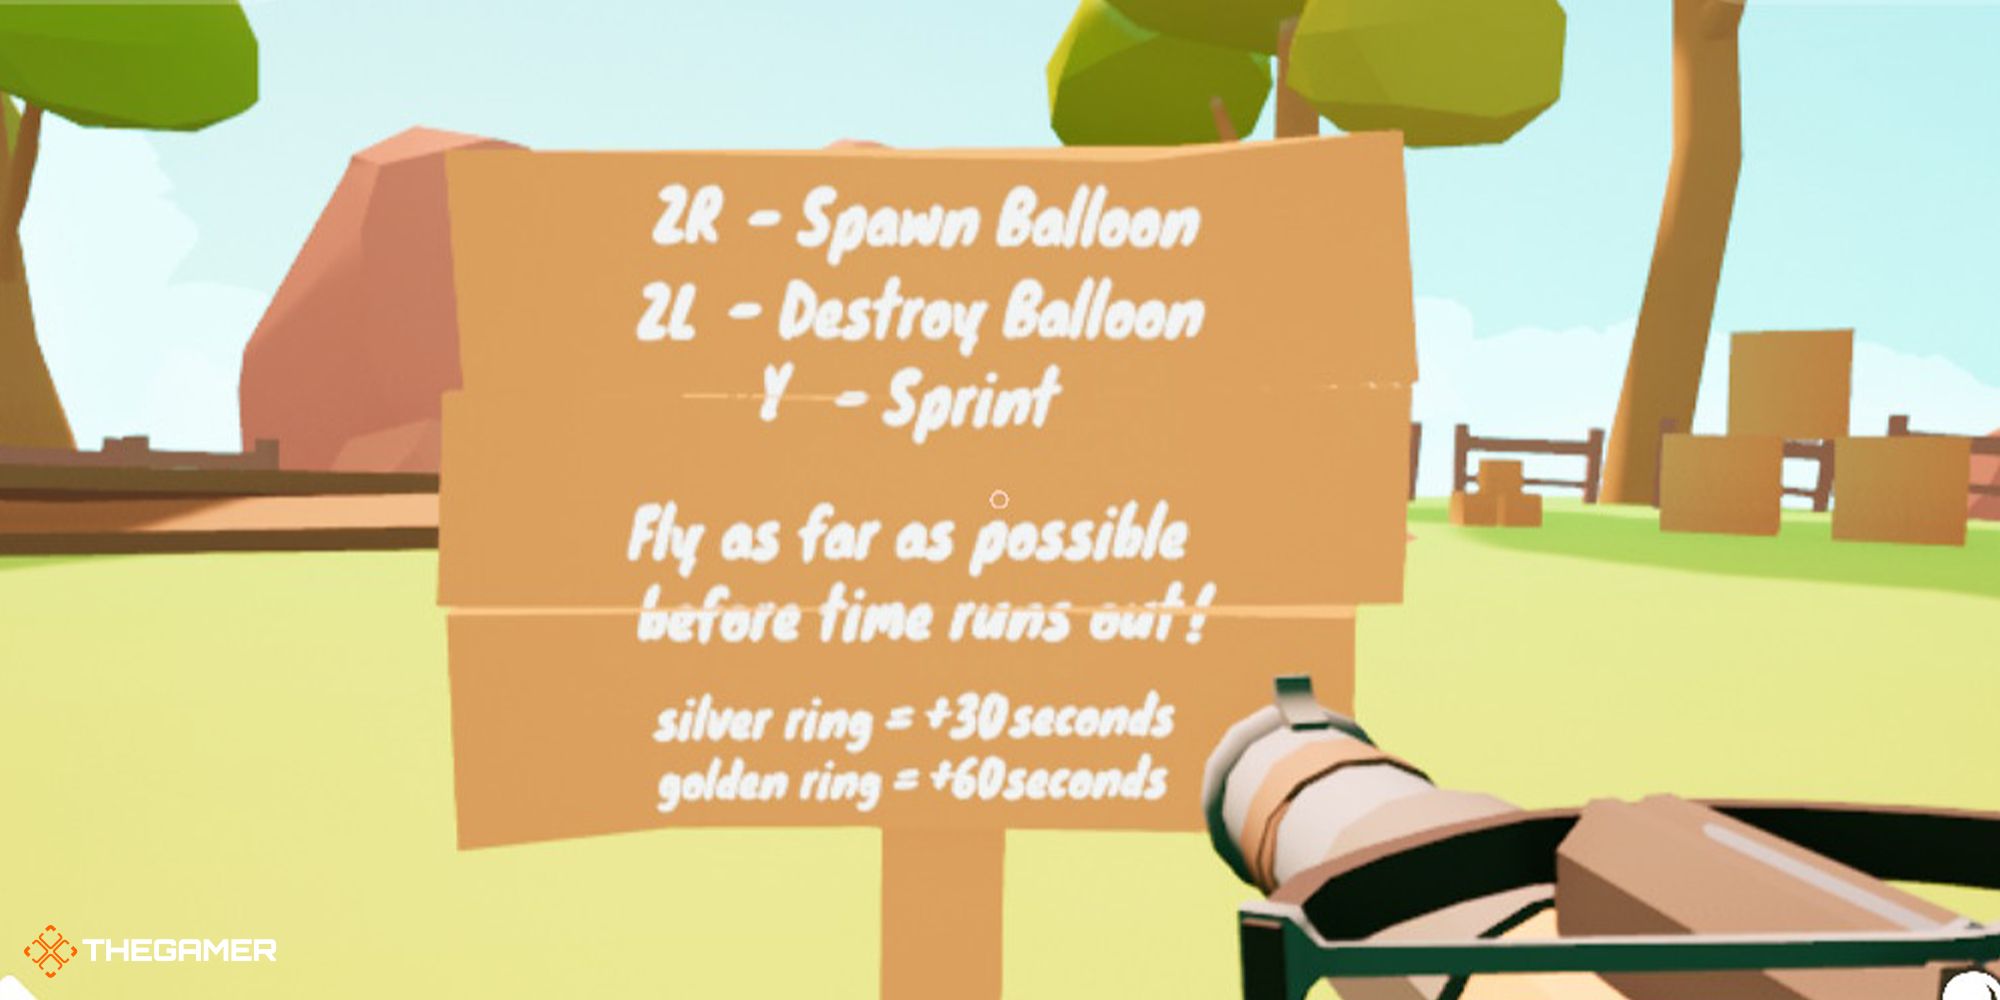 Balloon Flight - Sign full of instructions